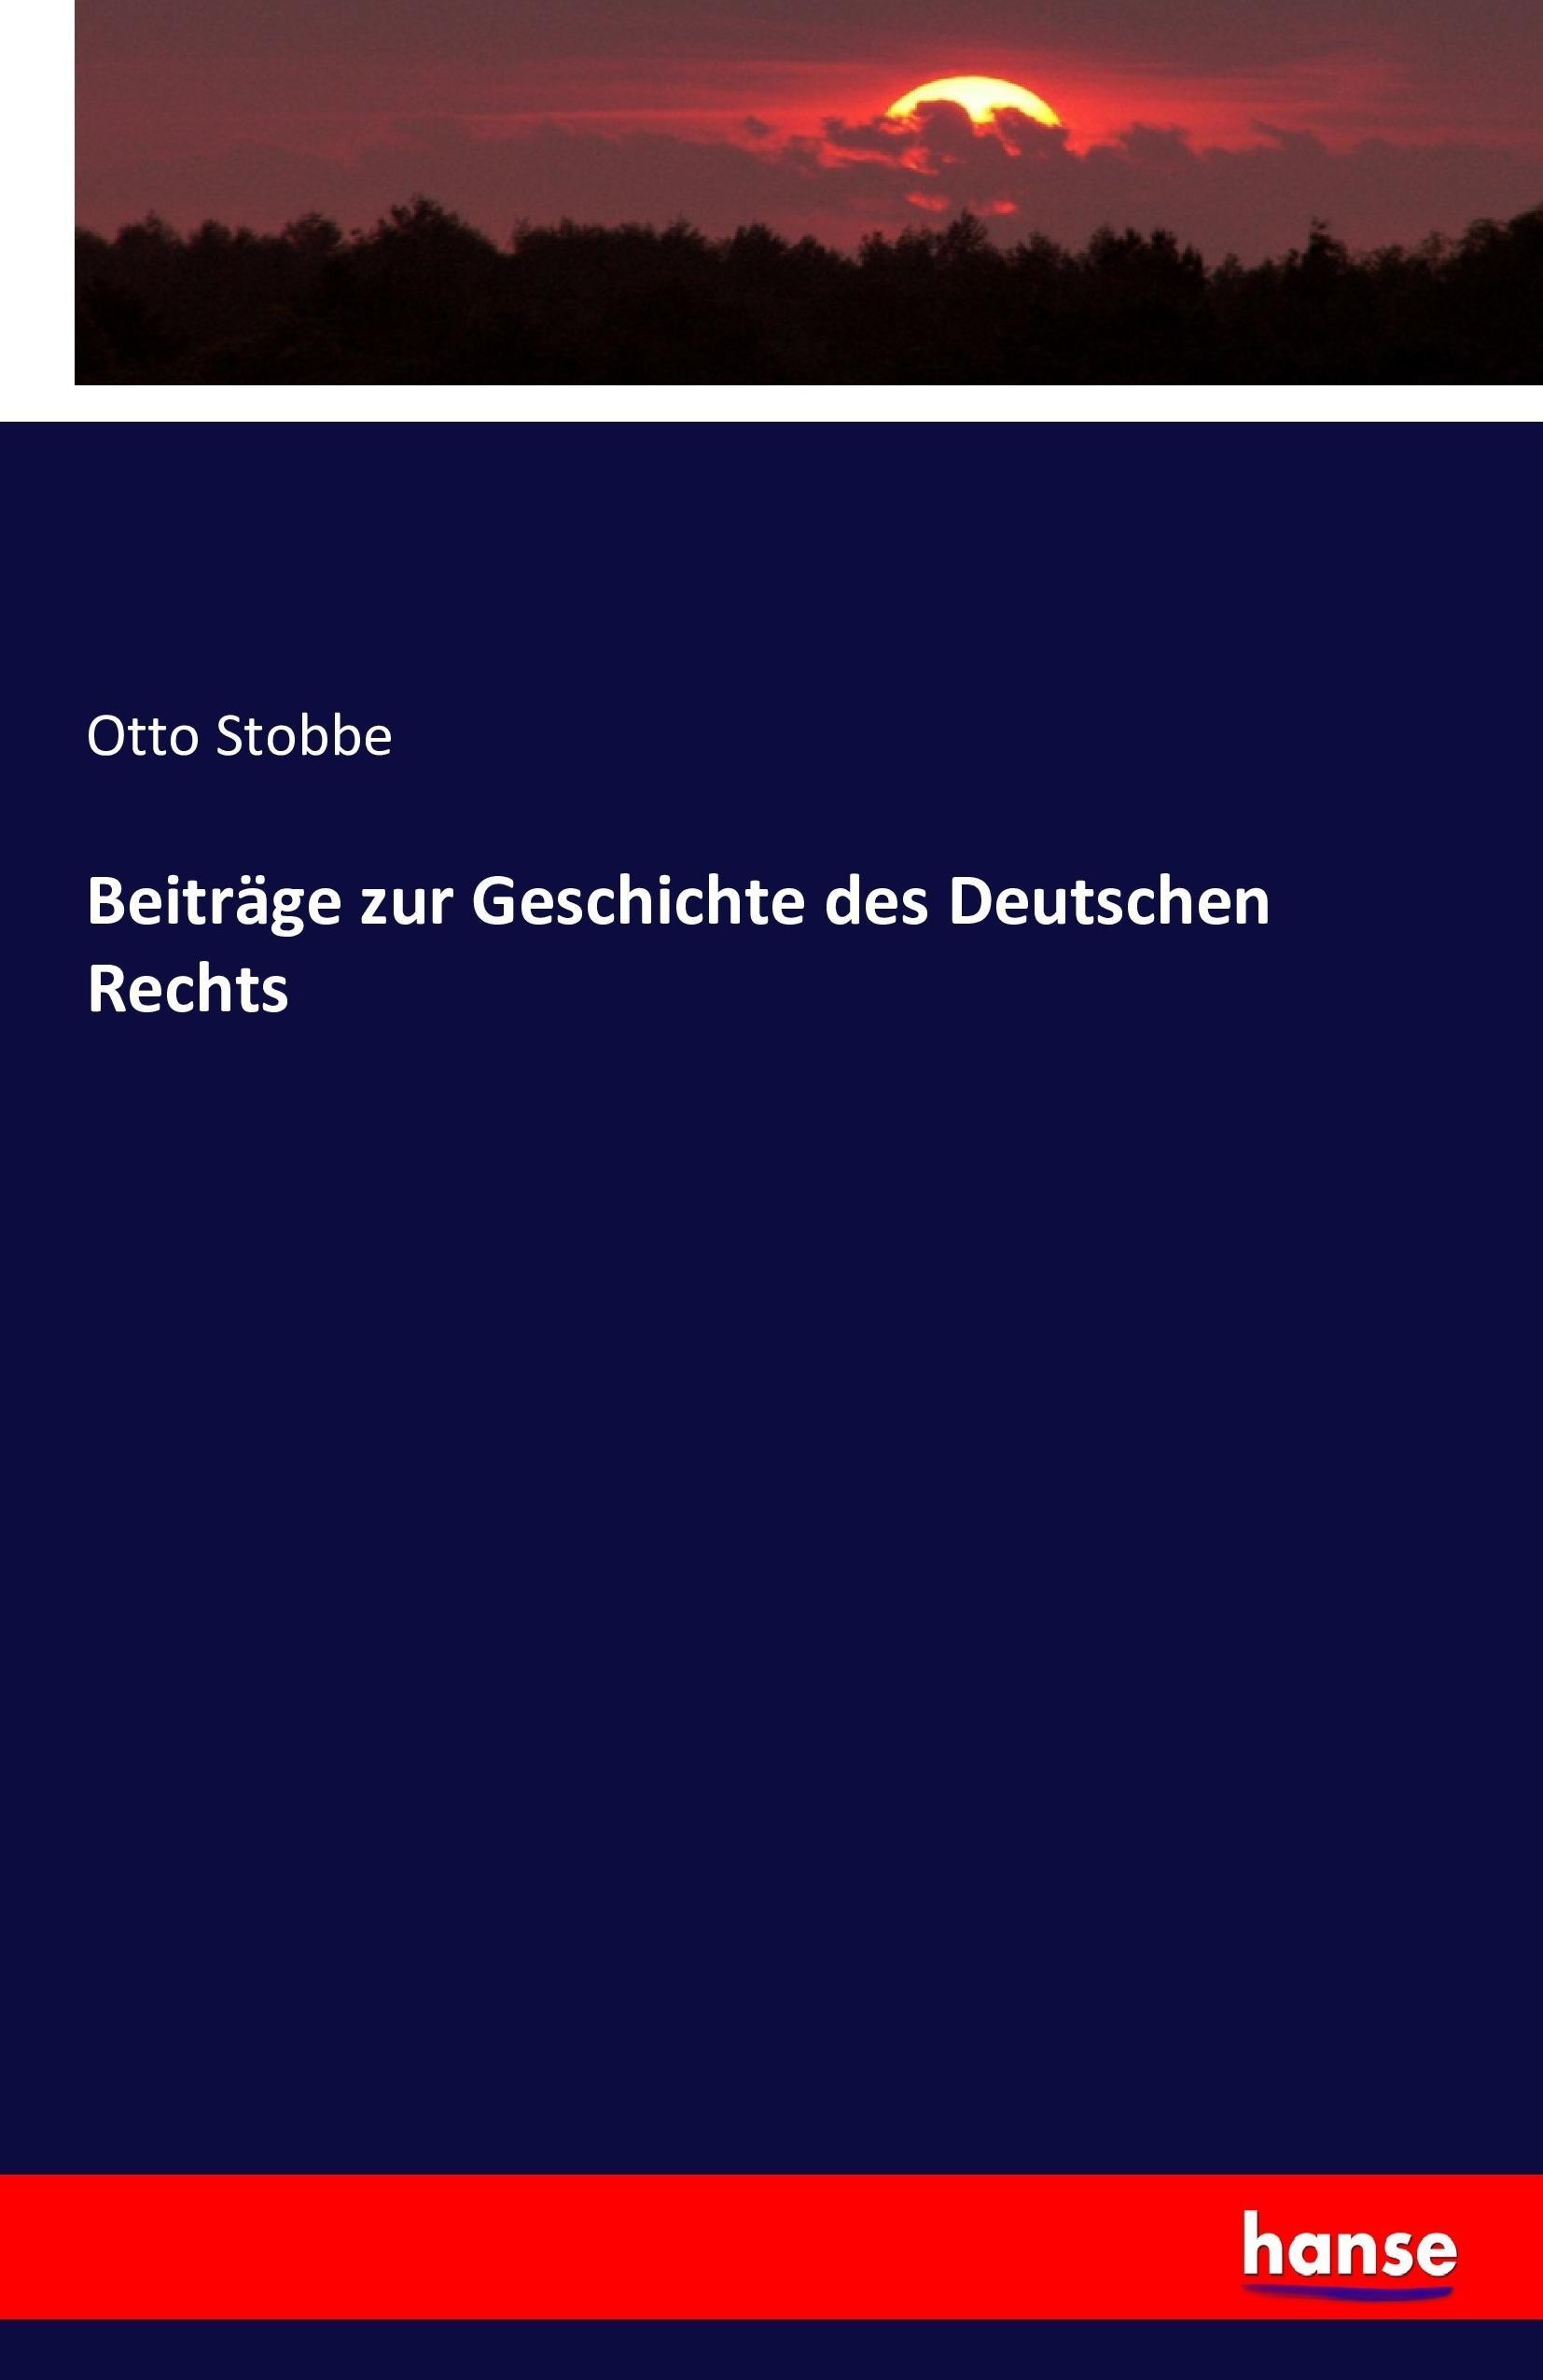 Beitraege zur Geschichte des Deutschen Rechts - Stobbe, Otto